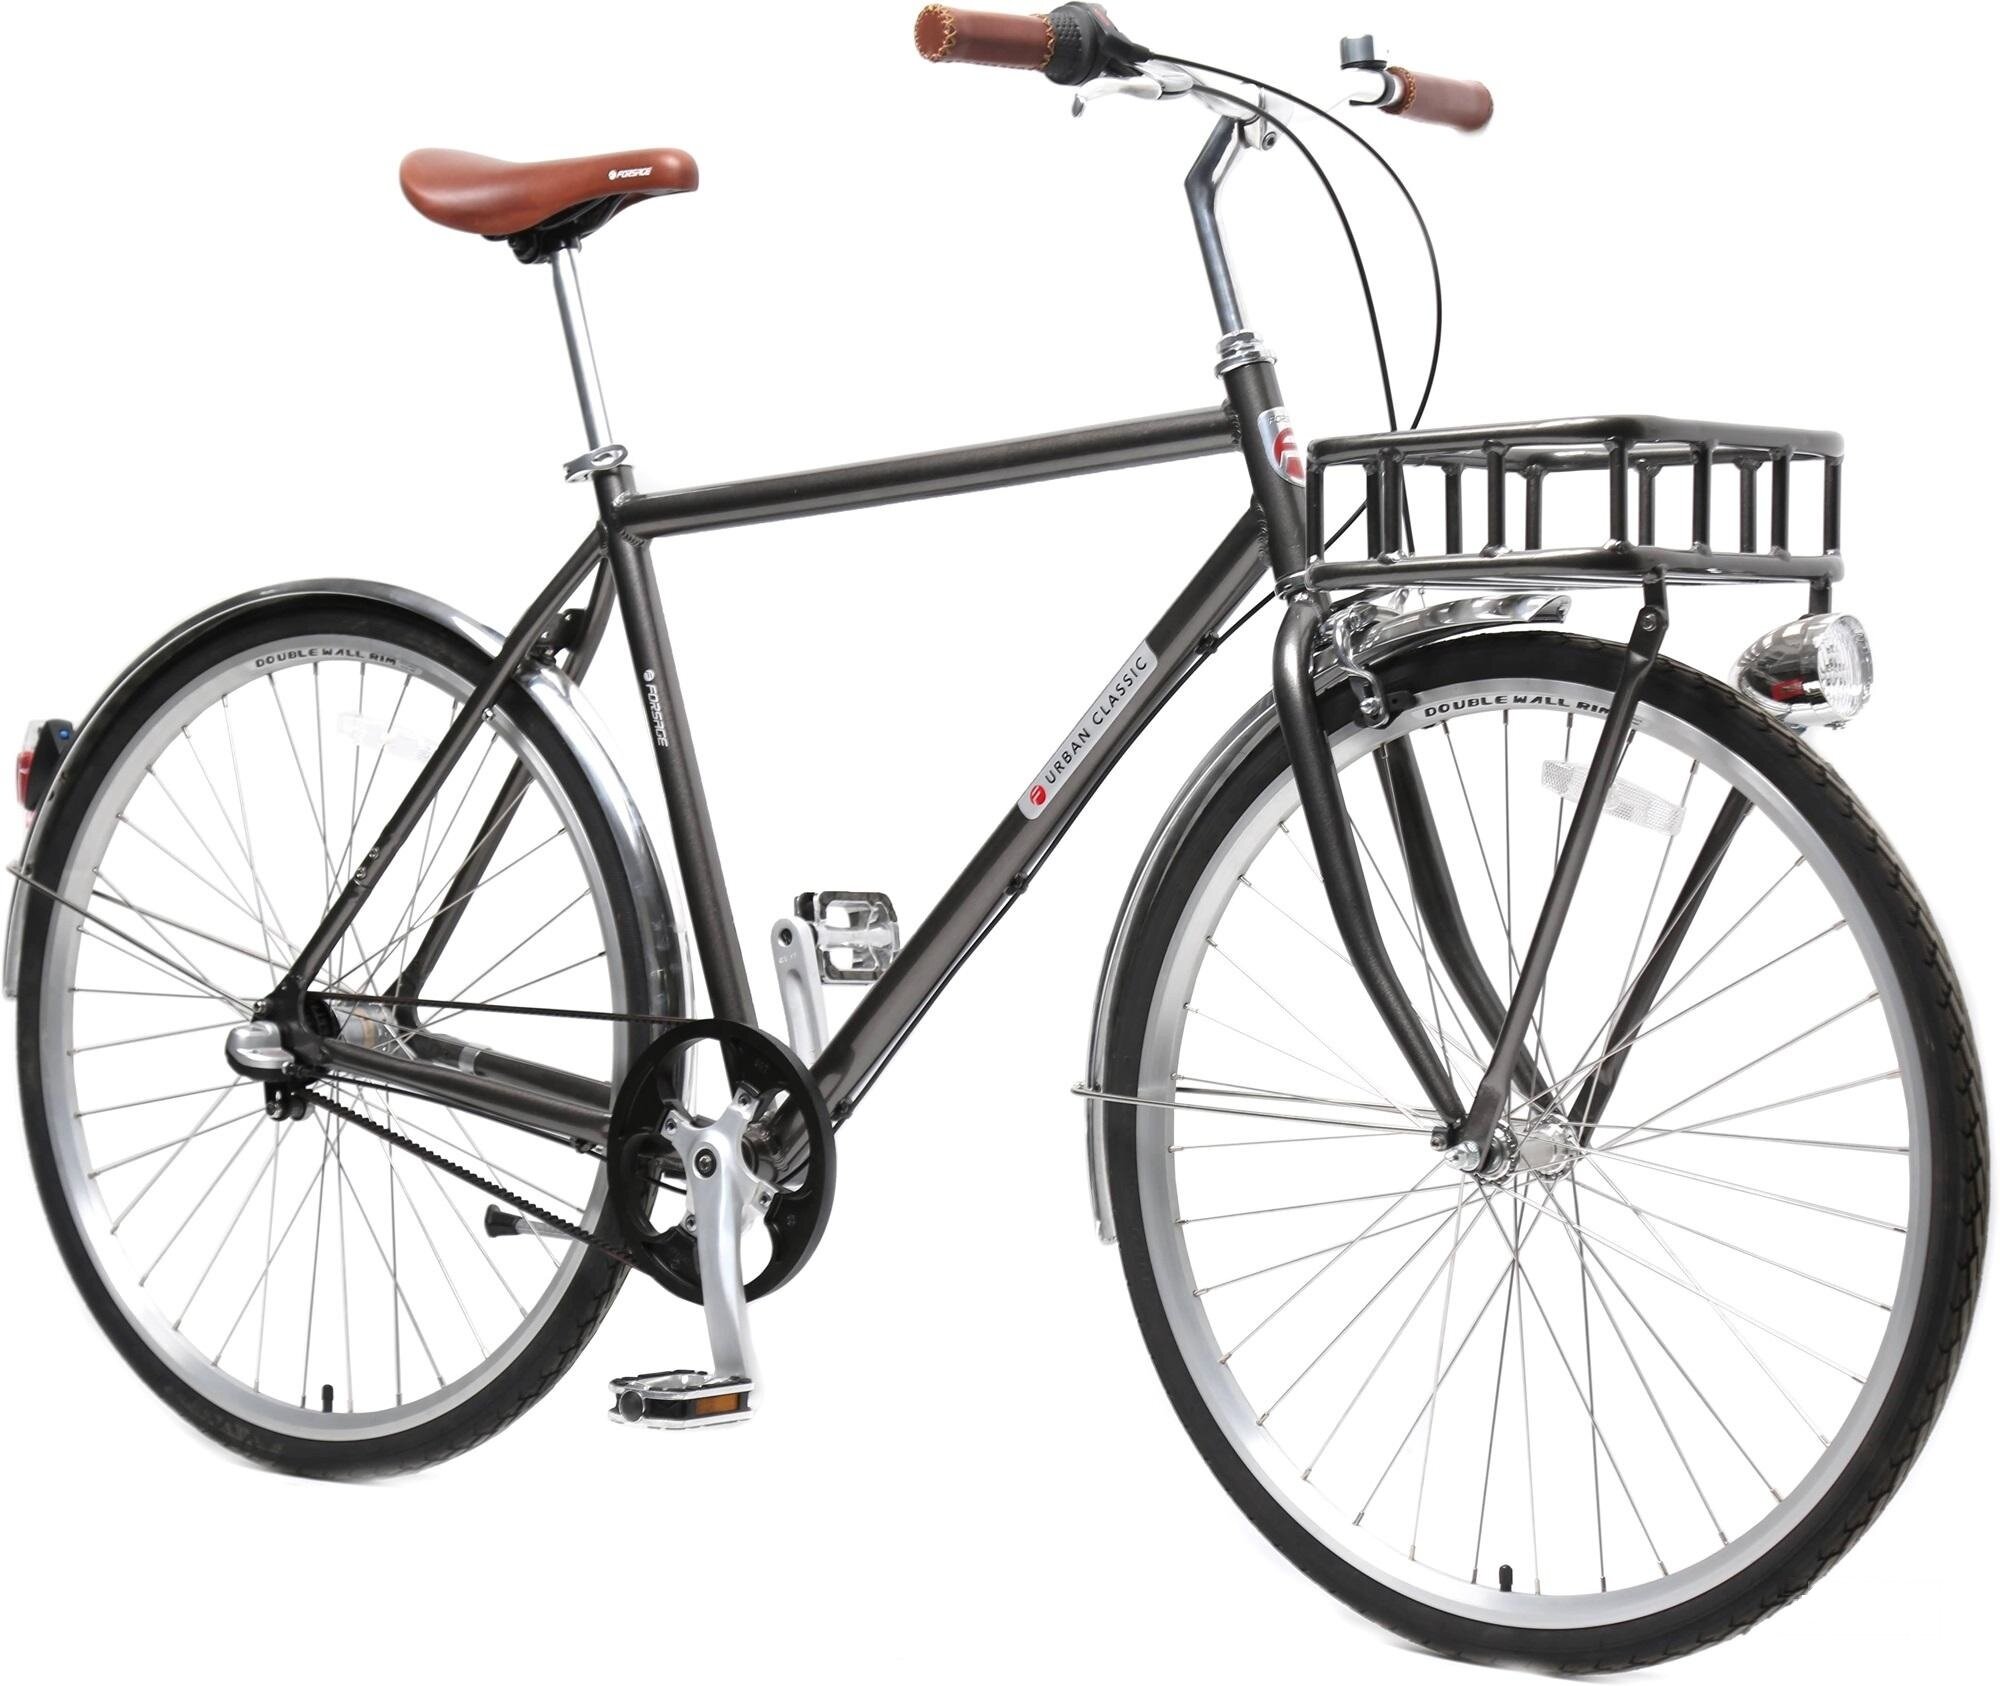 Велосипед Urban Classic M(Al 6061, колесо700с, пер/зад покр35C,3 планетар. скорости, тормаза: U-Brake, зад ножной, ремен. передача, рост до 175см, серый) Forsage-вело FB28005(510)